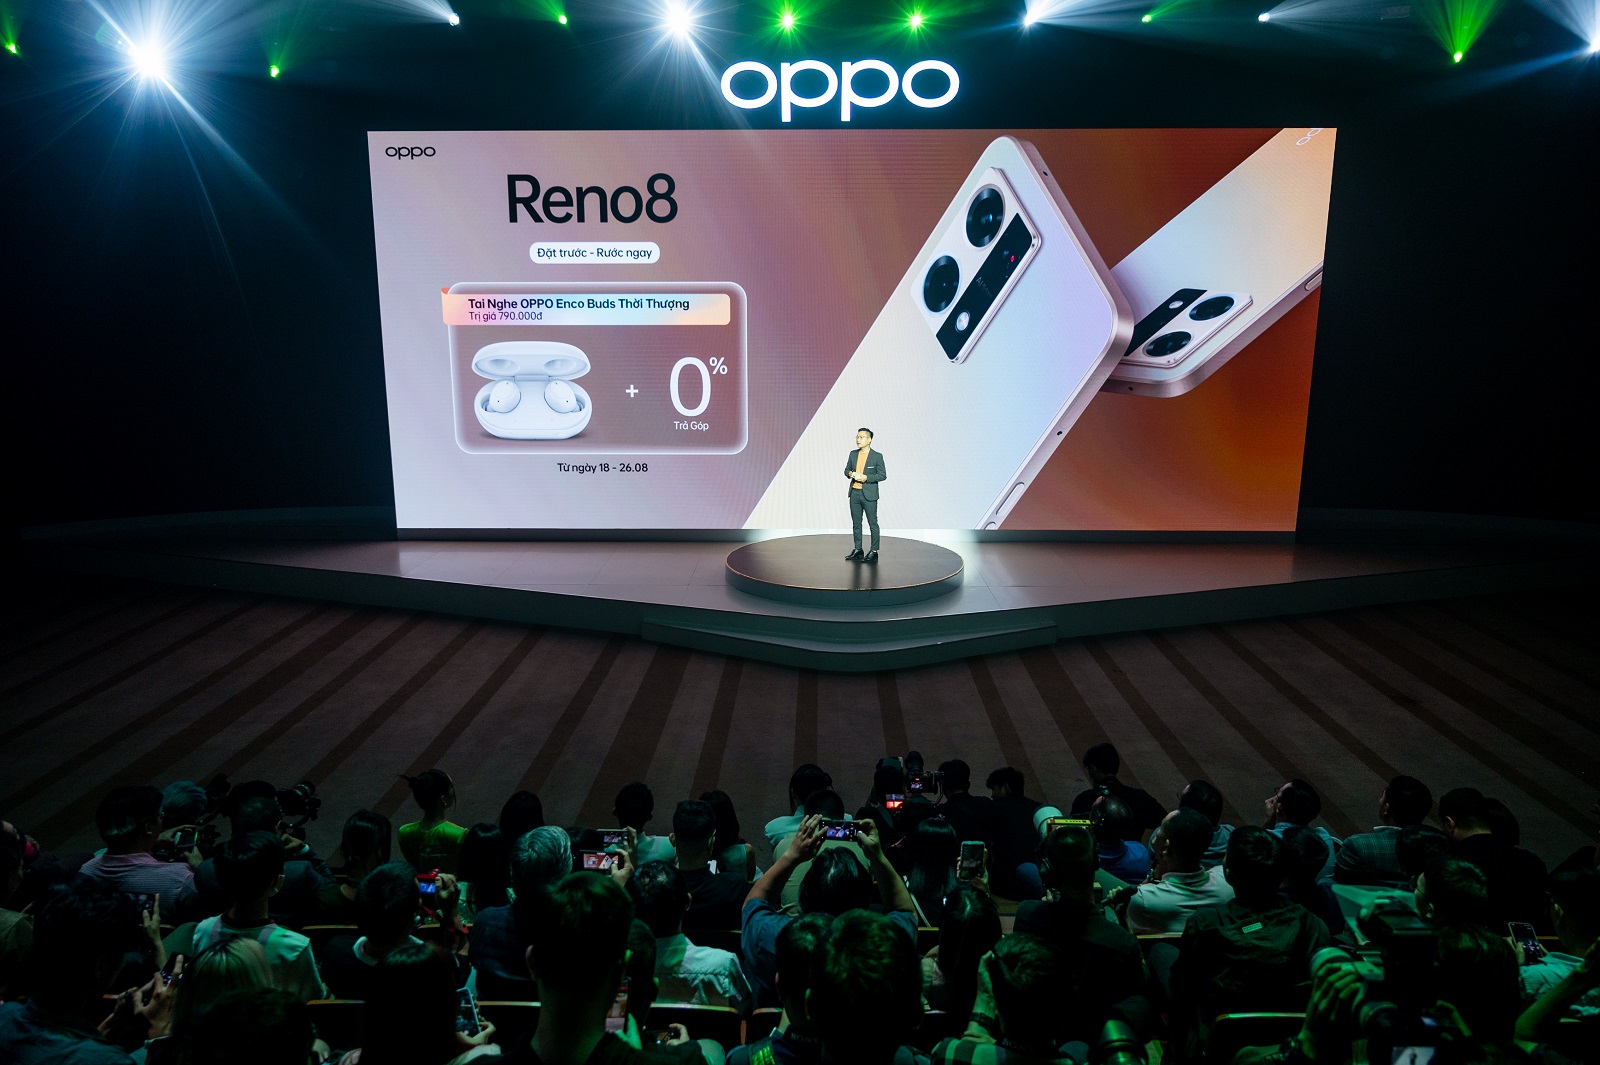 OPPO Reno8 Series ra mắt với nhiều cải tiến đáng kể